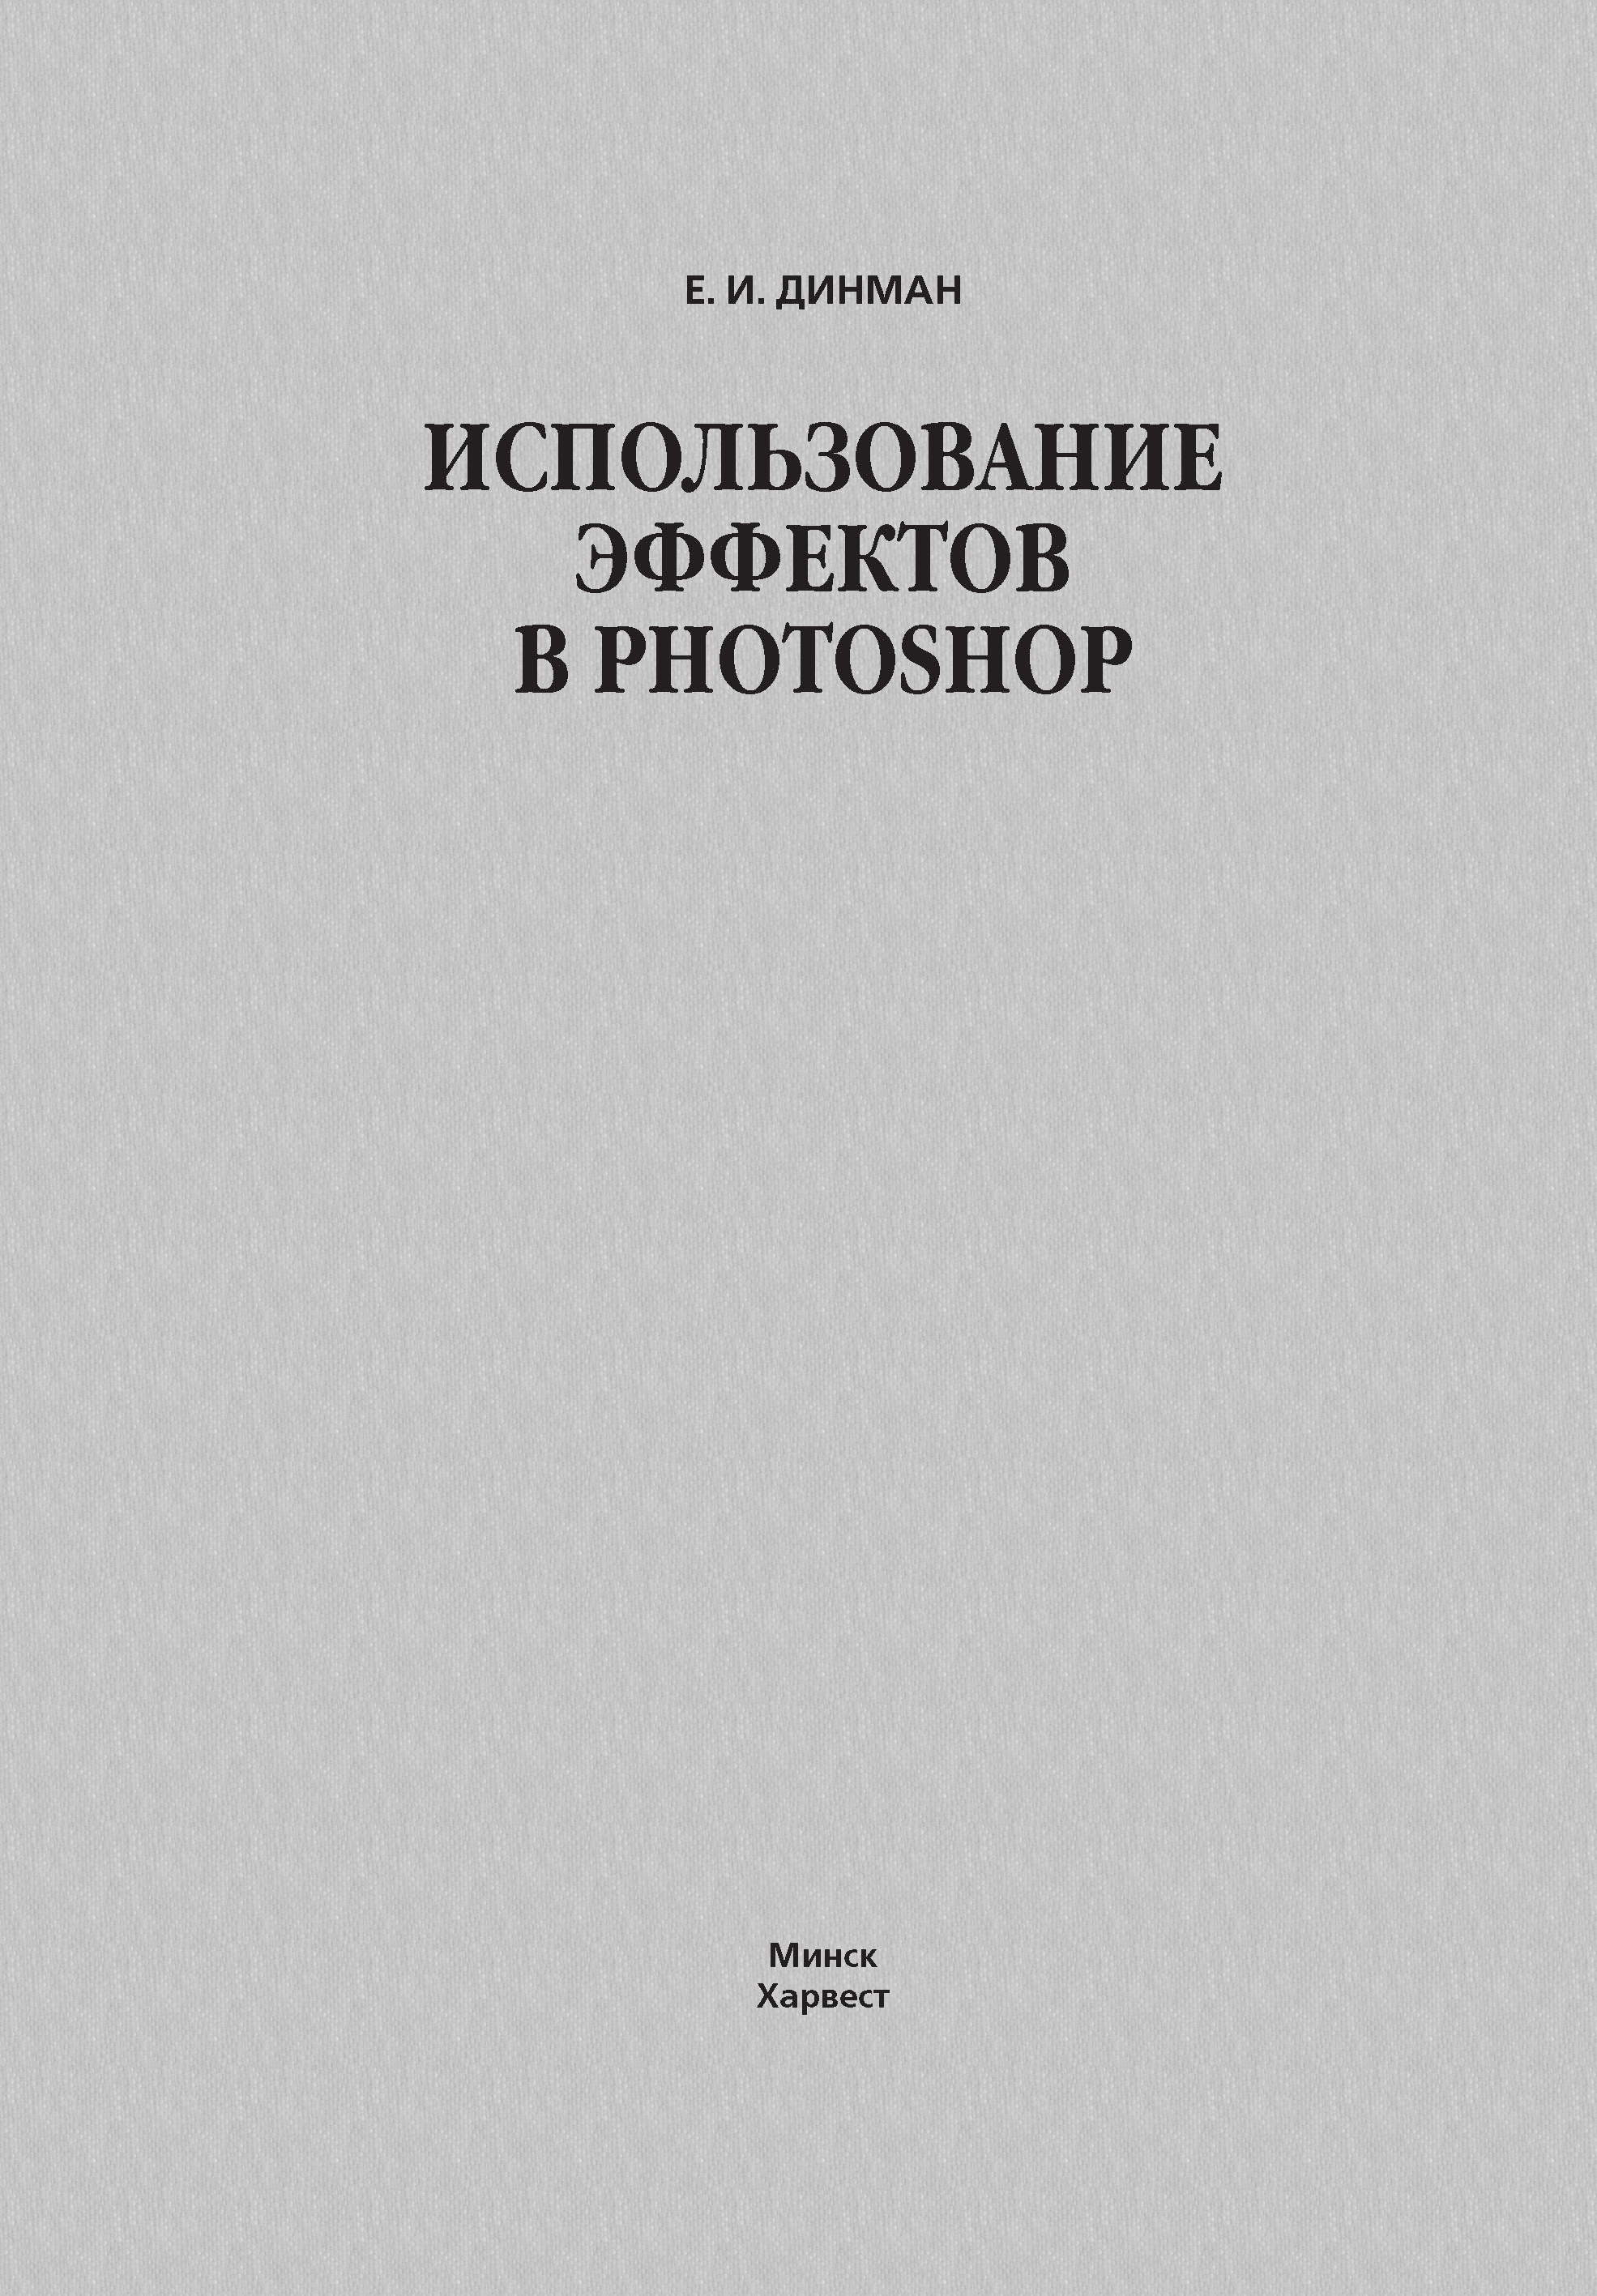 Книга  Использование эффектов в Photoshop созданная Елена Динман может относится к жанру программы, руководства. Стоимость электронной книги Использование эффектов в Photoshop с идентификатором 63110877 составляет 199.00 руб.